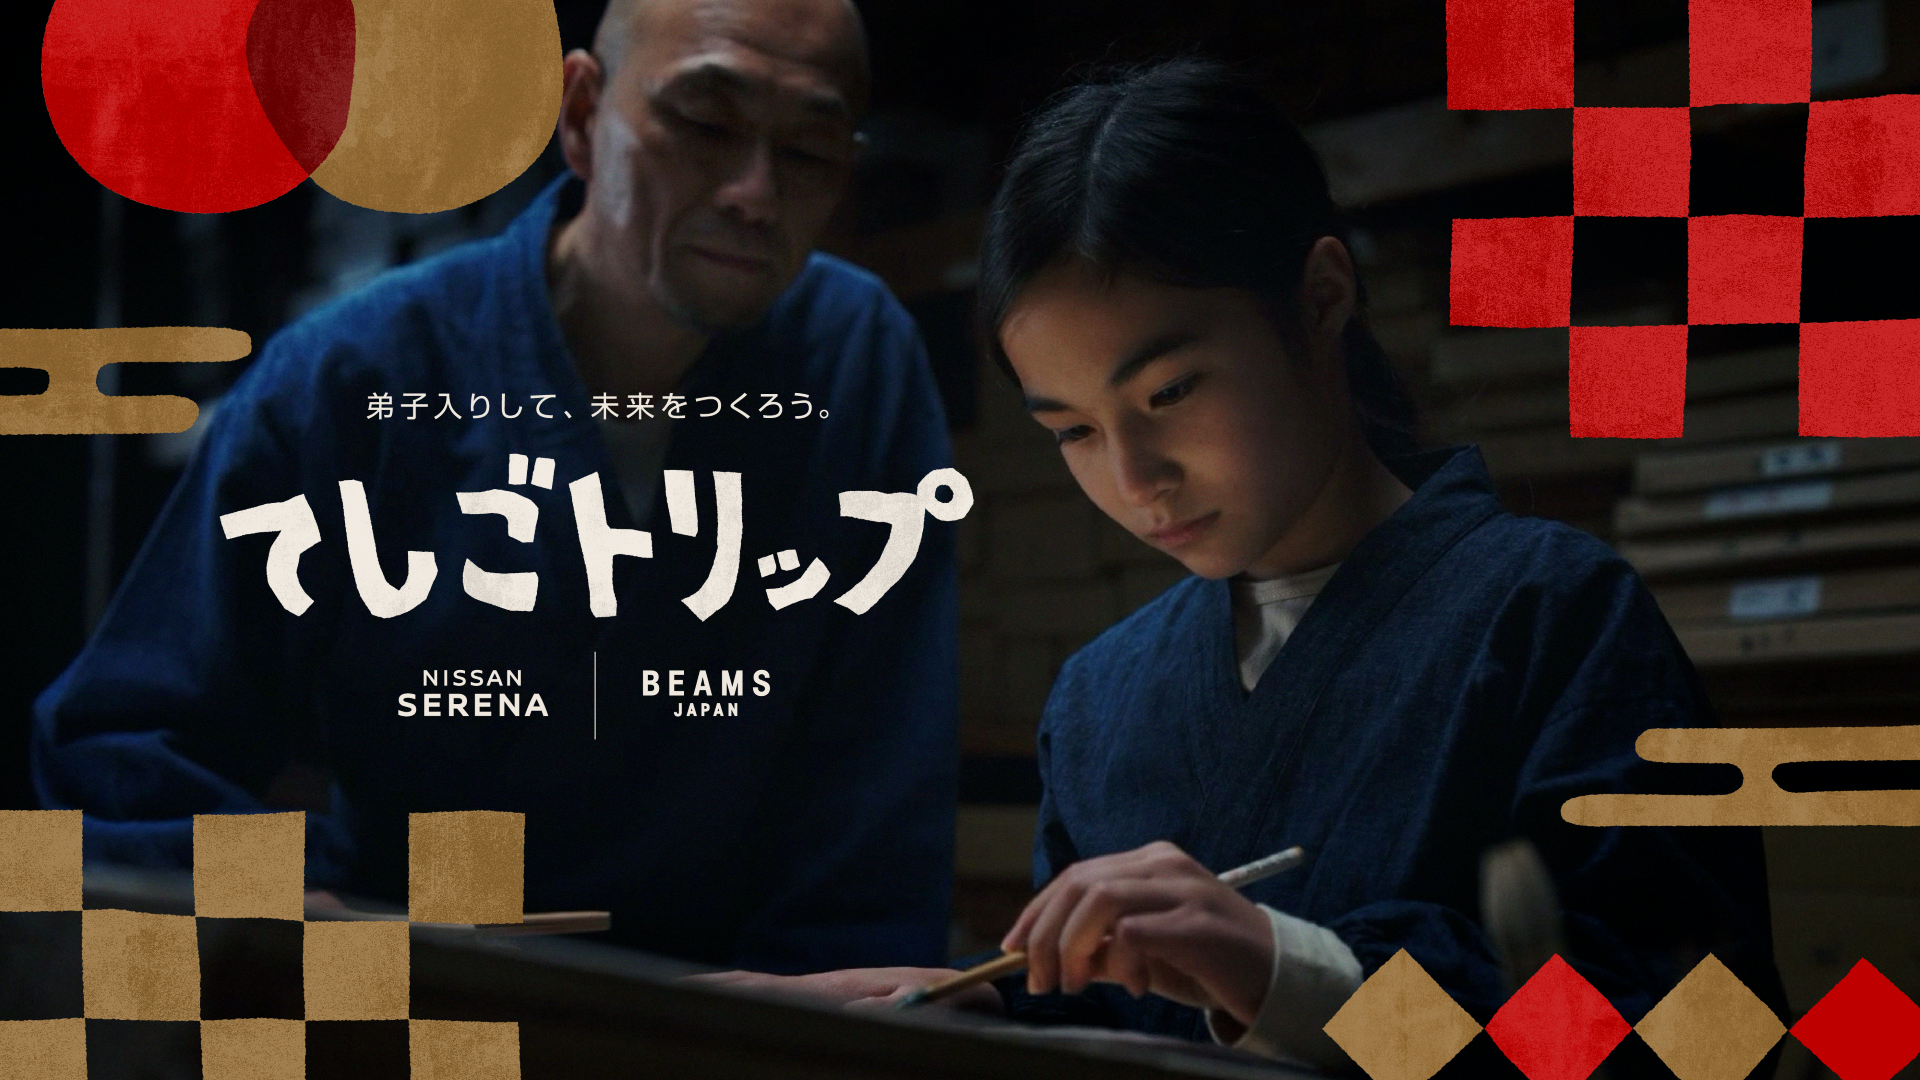 日産セレナ、BEAMS JAPAN 初の共同プロジェクト 家族のおでかけを通じて、子どもの感性を育む“旅育”を推進日本各地の伝統工芸で“弟子入り体験”ができる「てしごトリップ」を開始